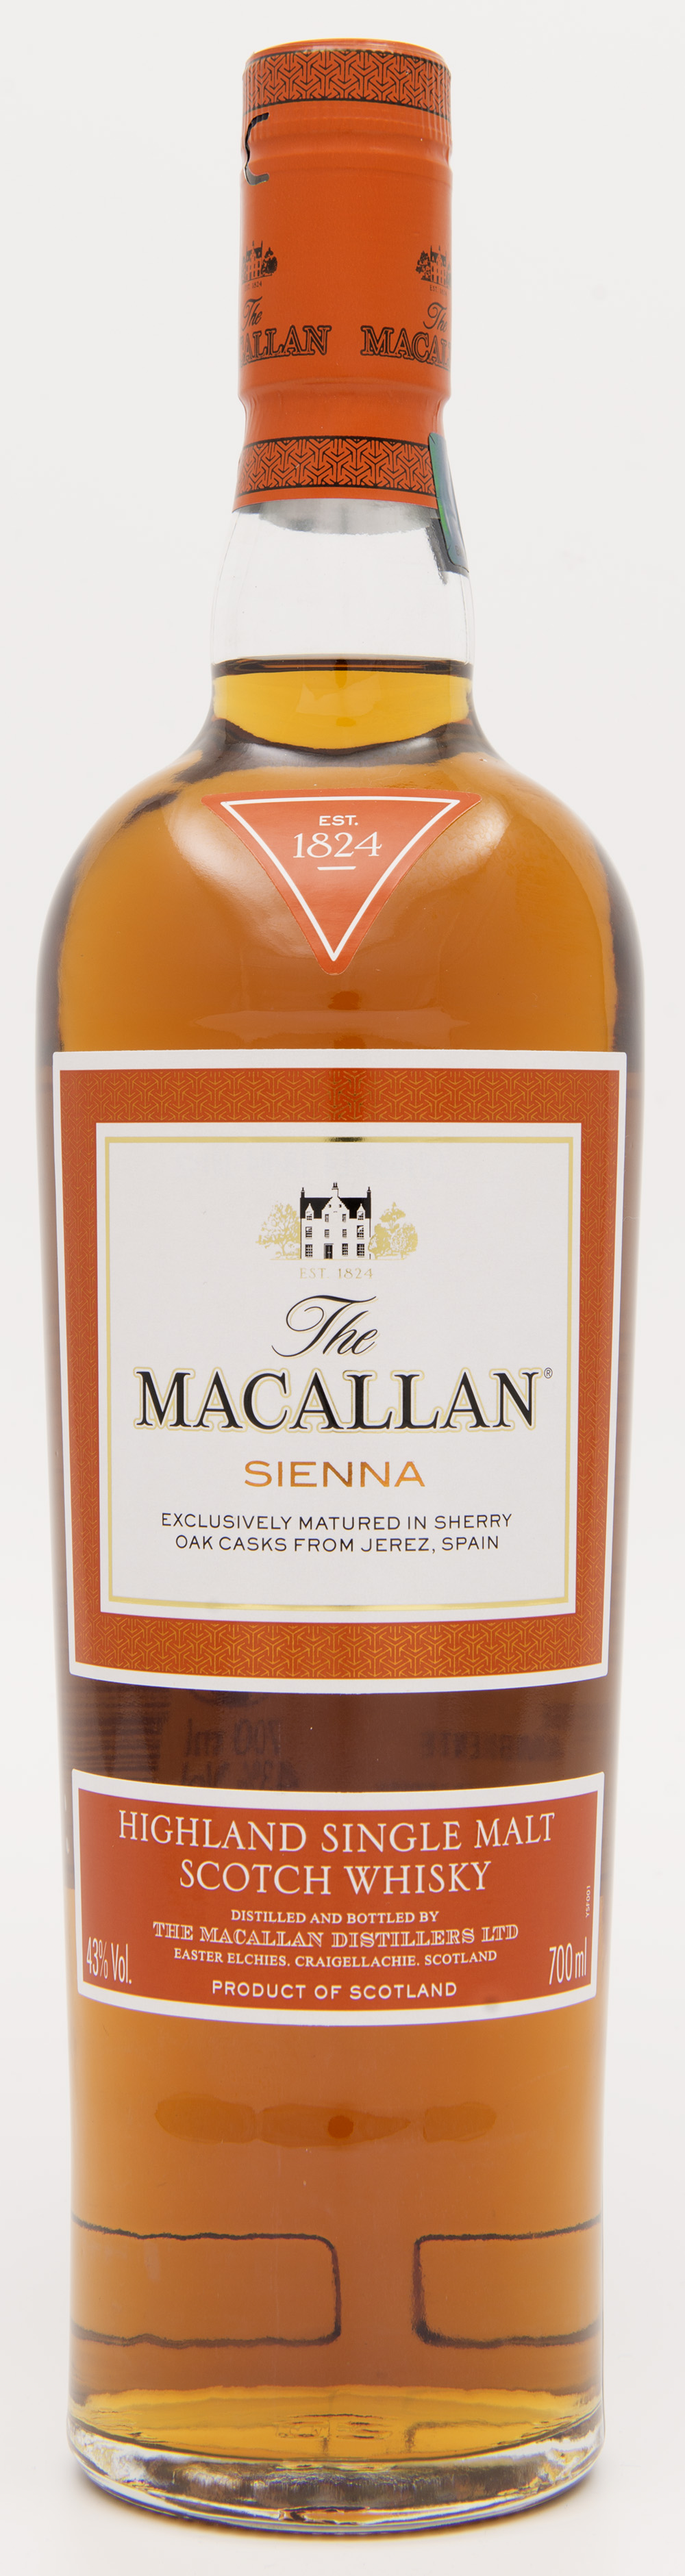 Billede: DSC_3588 The MacAllan Sienne - bottle front.jpg